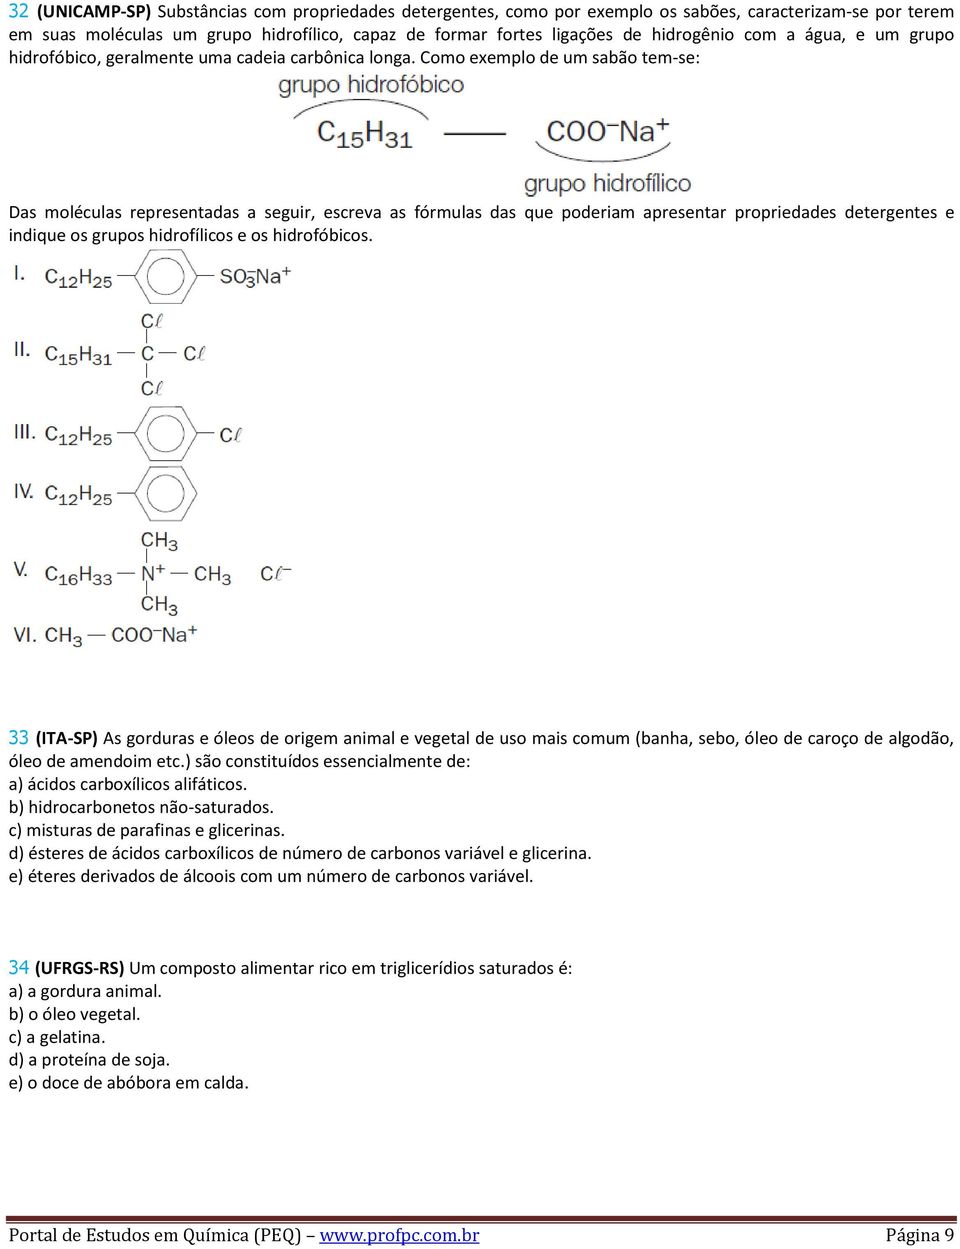 Como exemplo de um sabão tem-se: Das moléculas representadas a seguir, escreva as fórmulas das que poderiam apresentar propriedades detergentes e indique os grupos hidrofílicos e os hidrofóbicos.